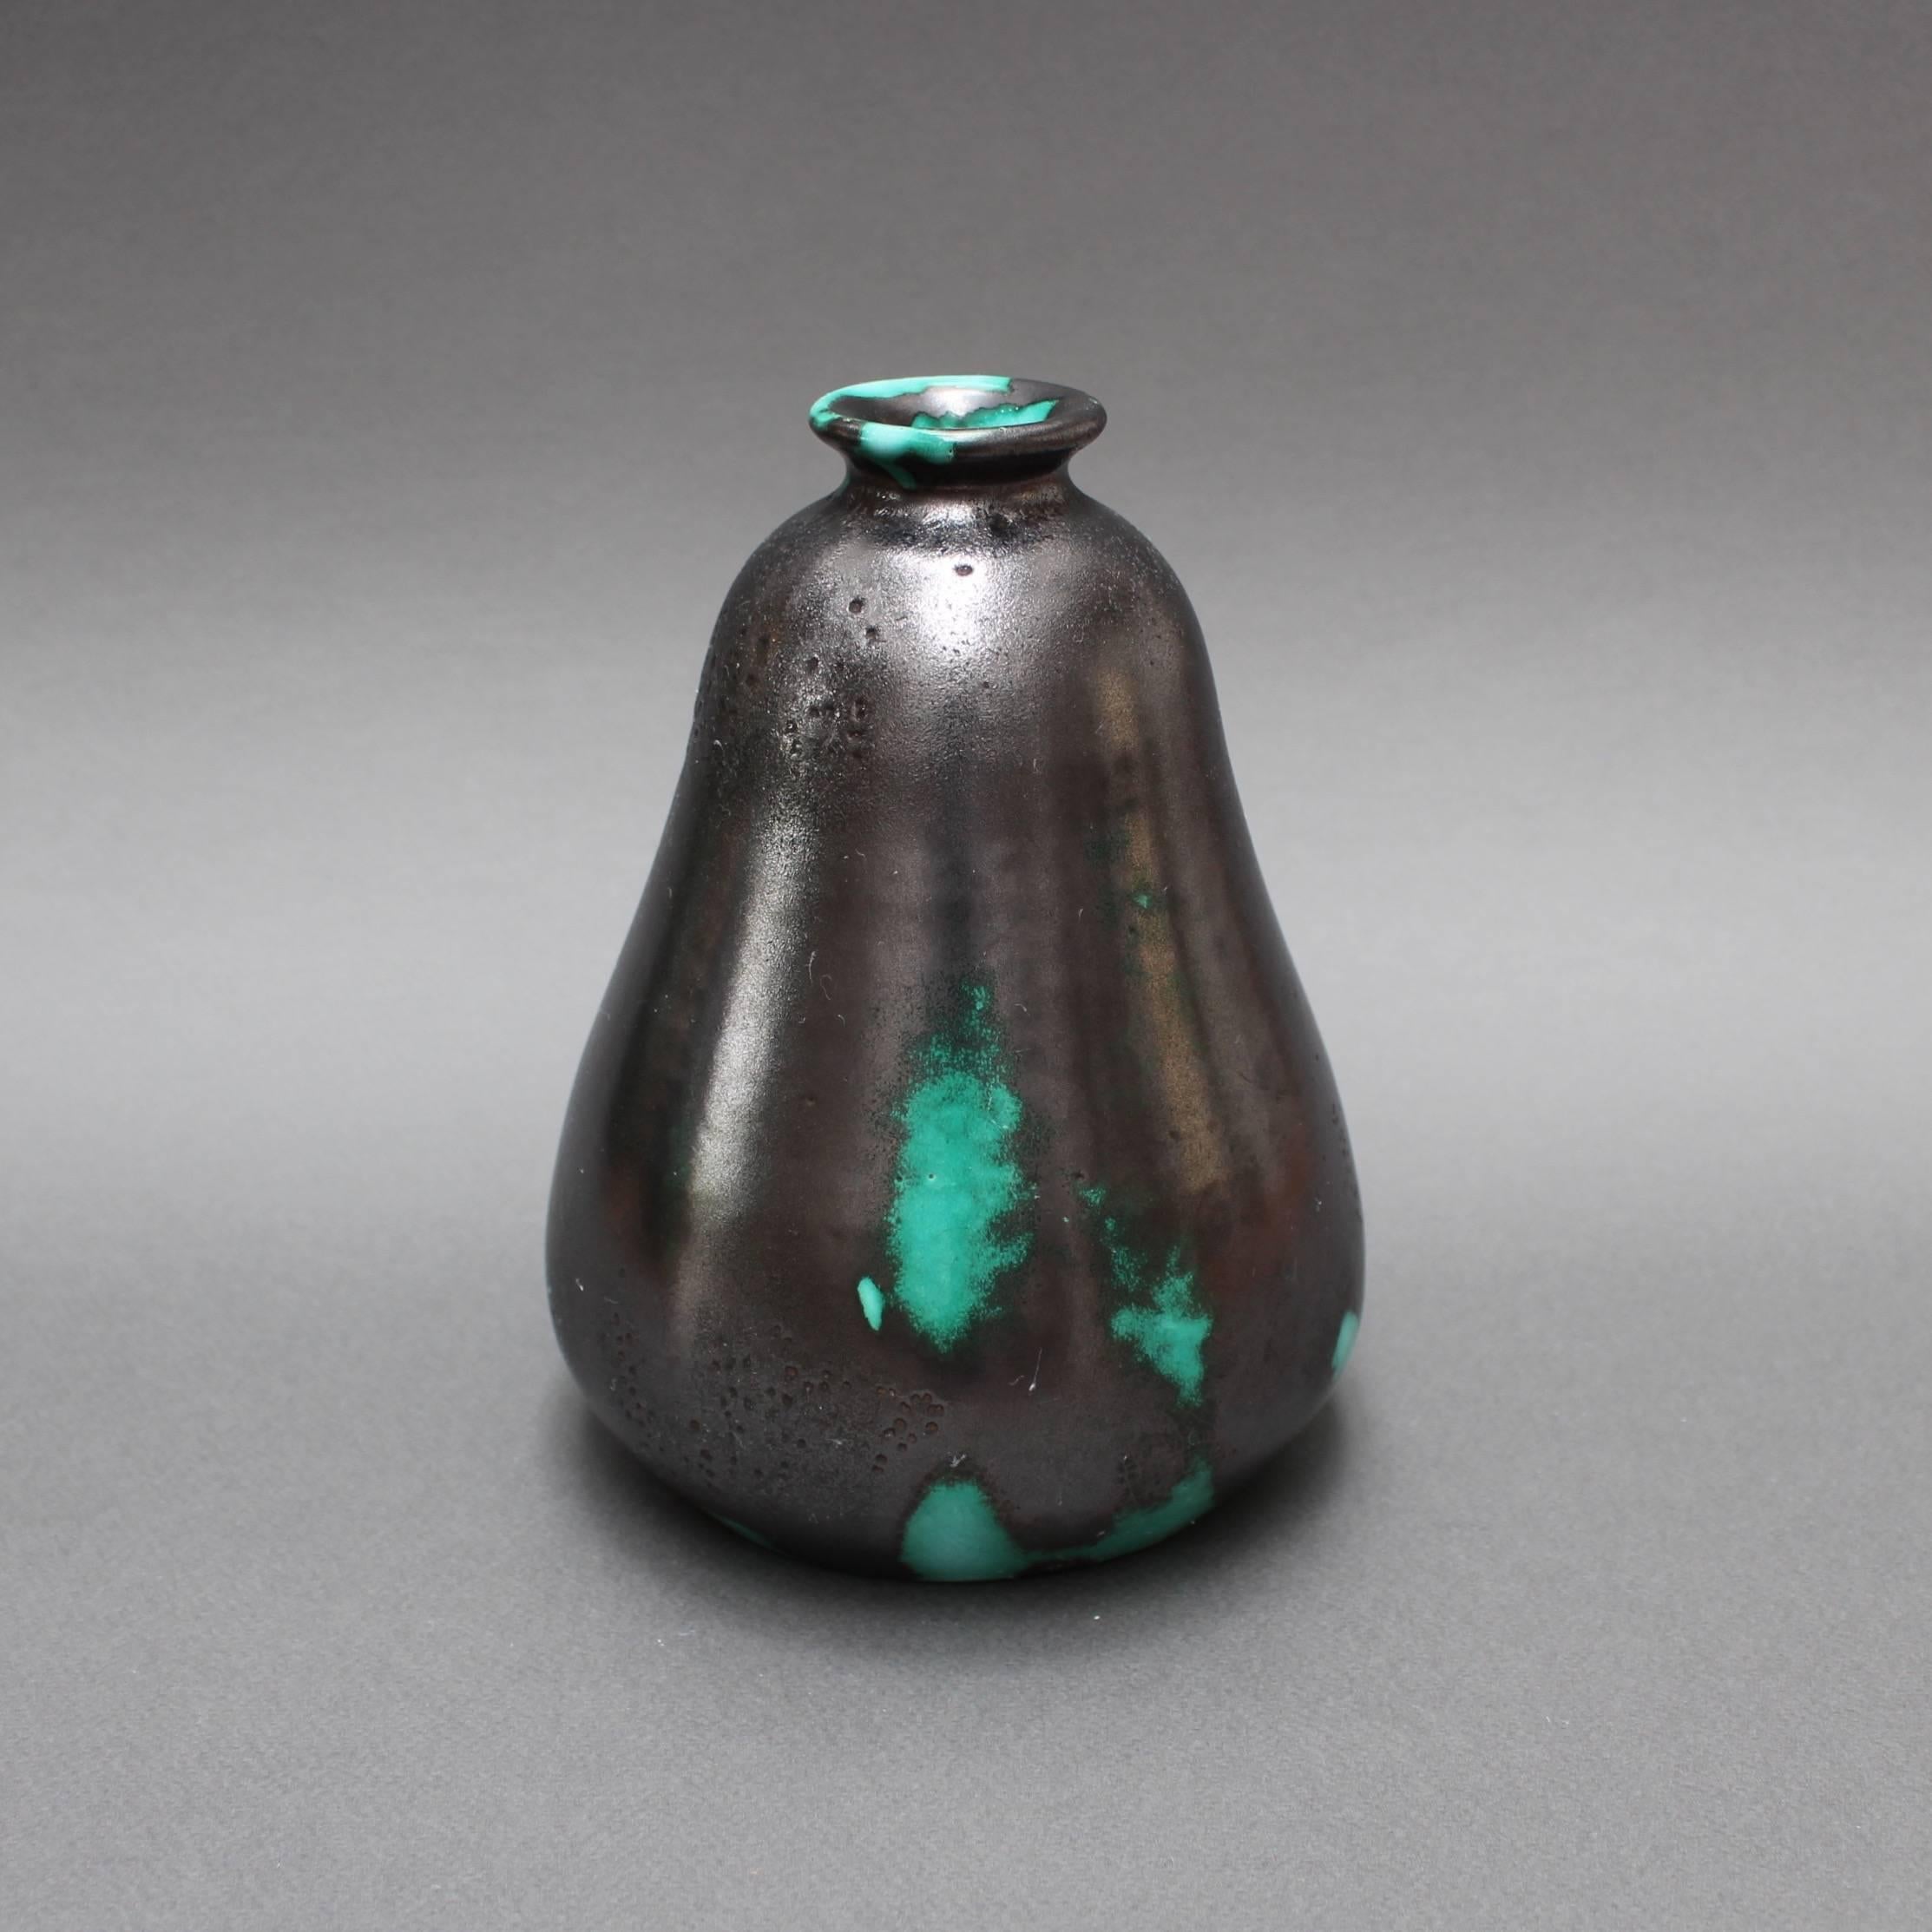 Vase Primavera en céramique noire et verte de C.A.B. (Céramique d'art de Bordeaux) pour le Printemps (vers 1930). Ce vase en forme de poire à l'embouchure étroite est tout à fait envoûtant. La base de couleur verte est pratiquement recouverte d'un